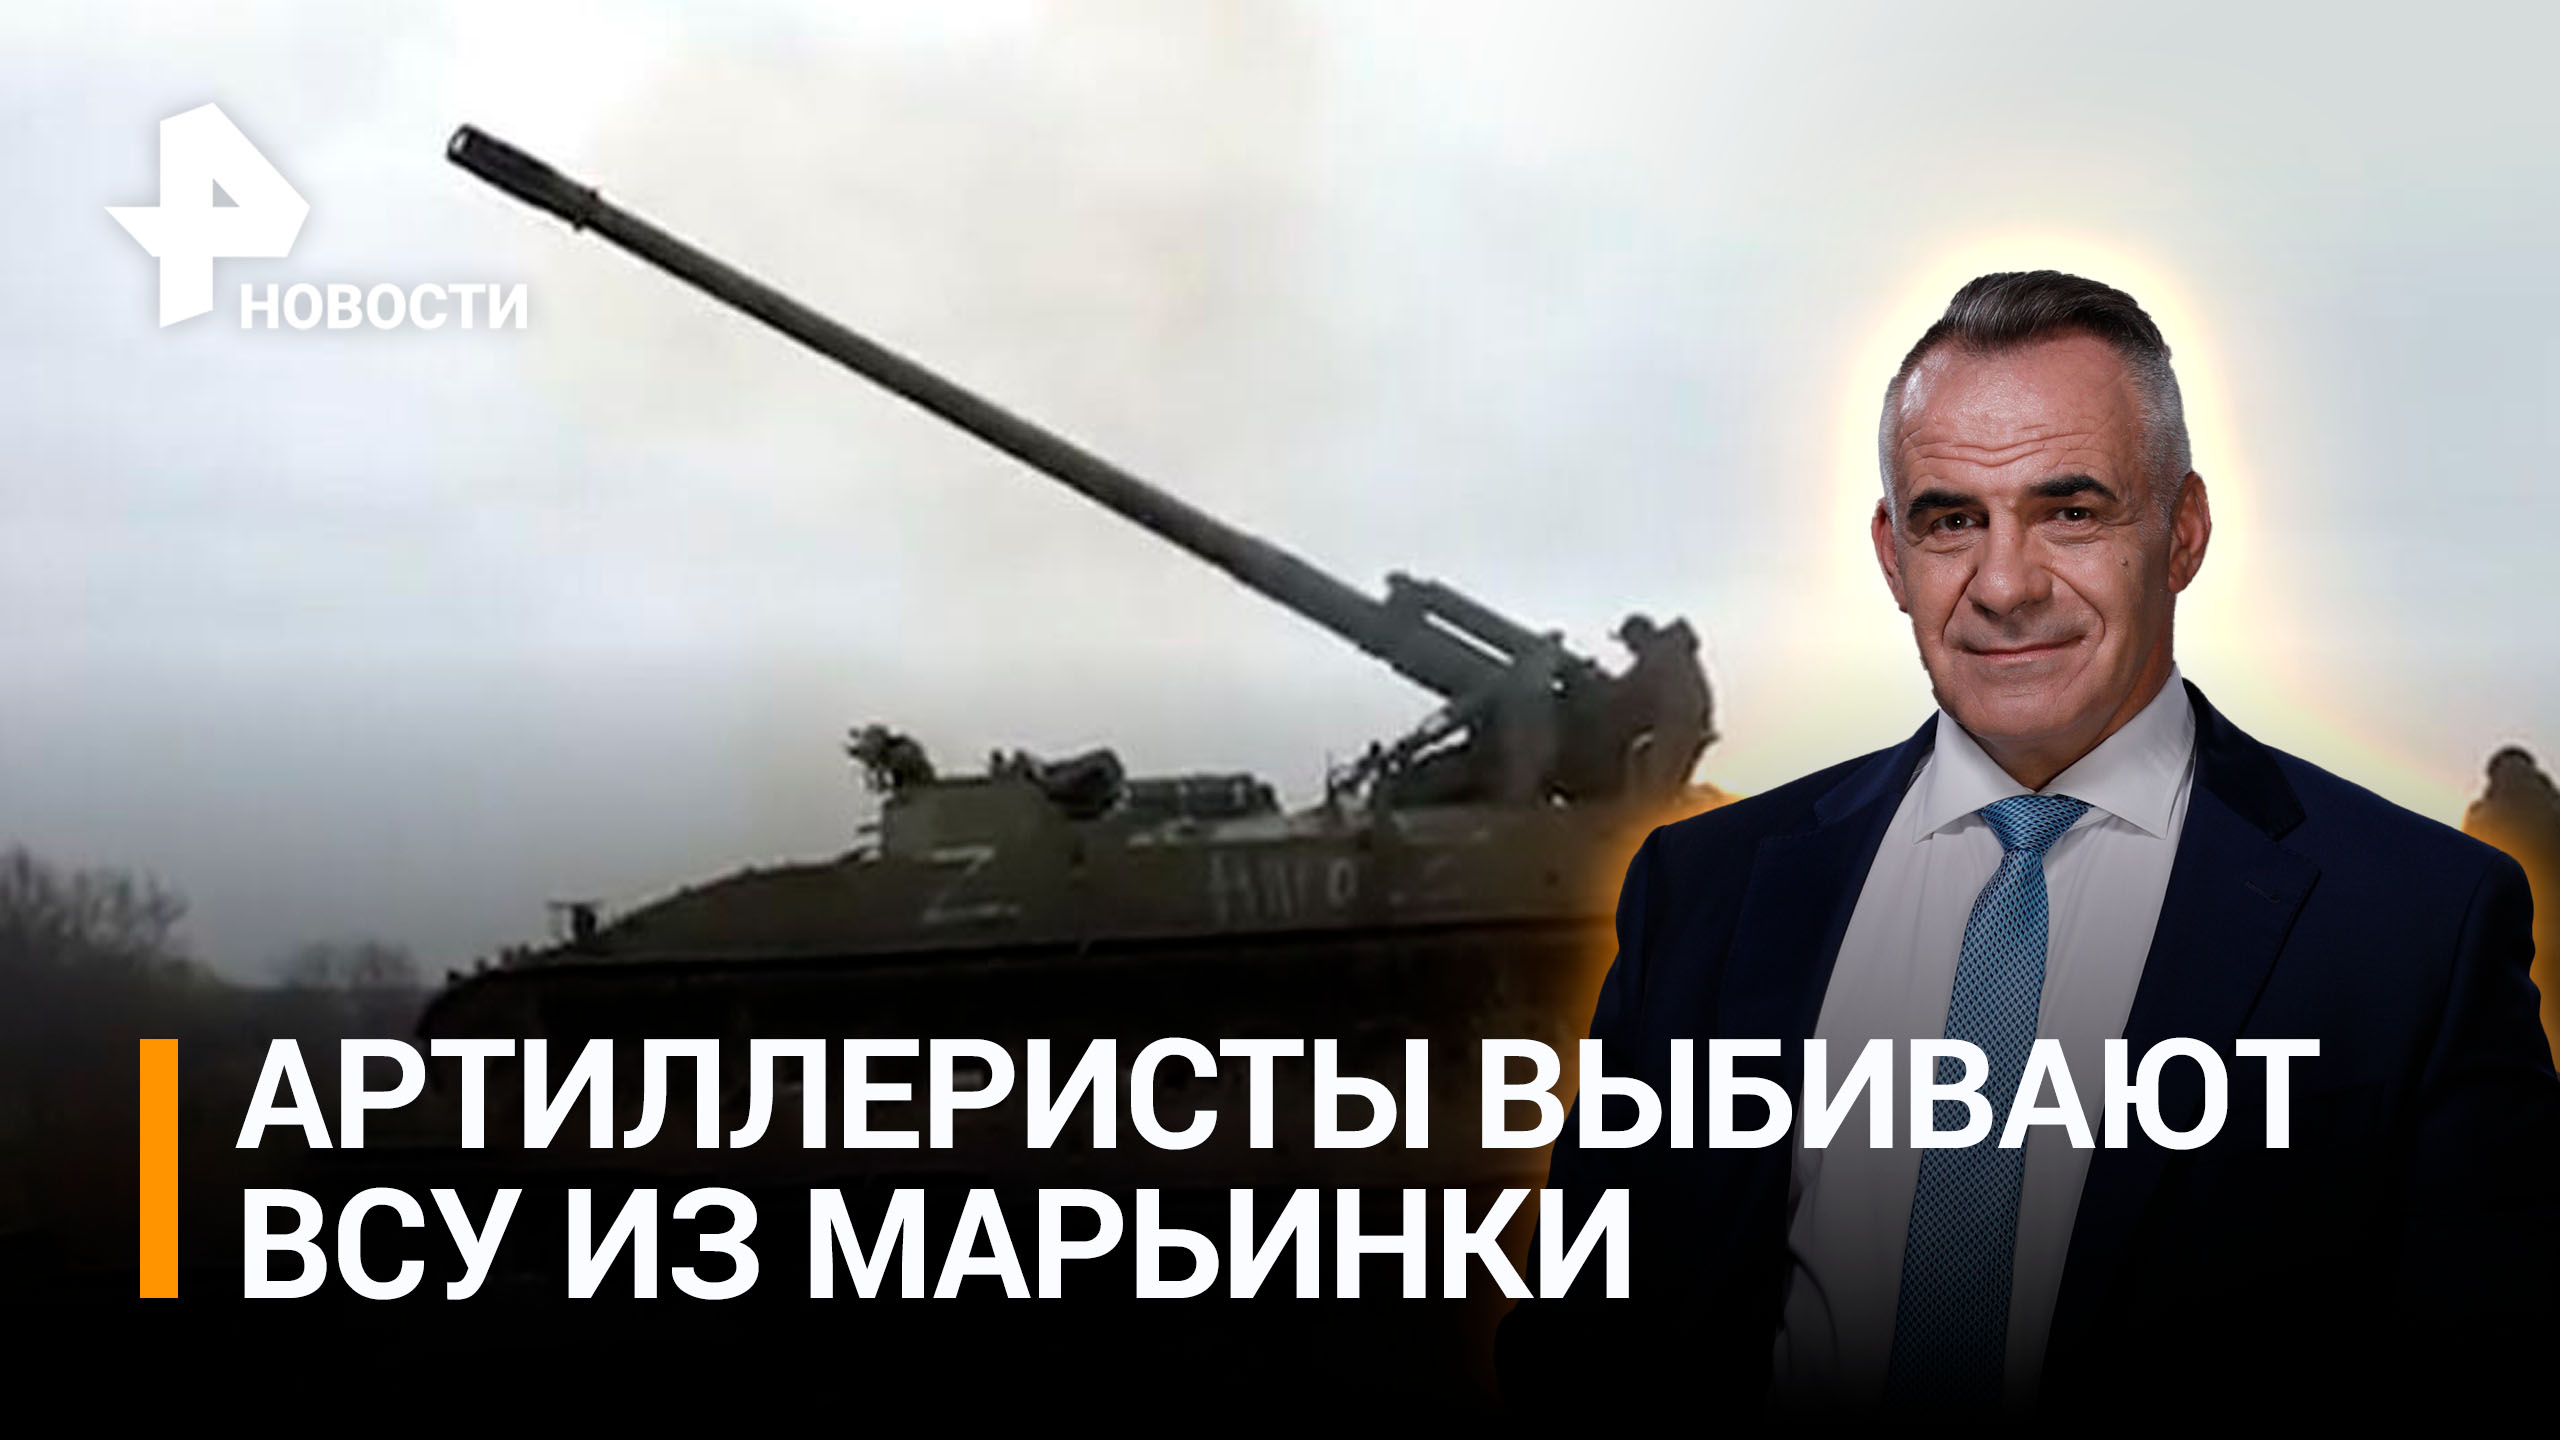 Сражение за каждый метр: как артиллеристы выбивают ВСУ из Марьинки / ИТОГИ с Петром Марченко